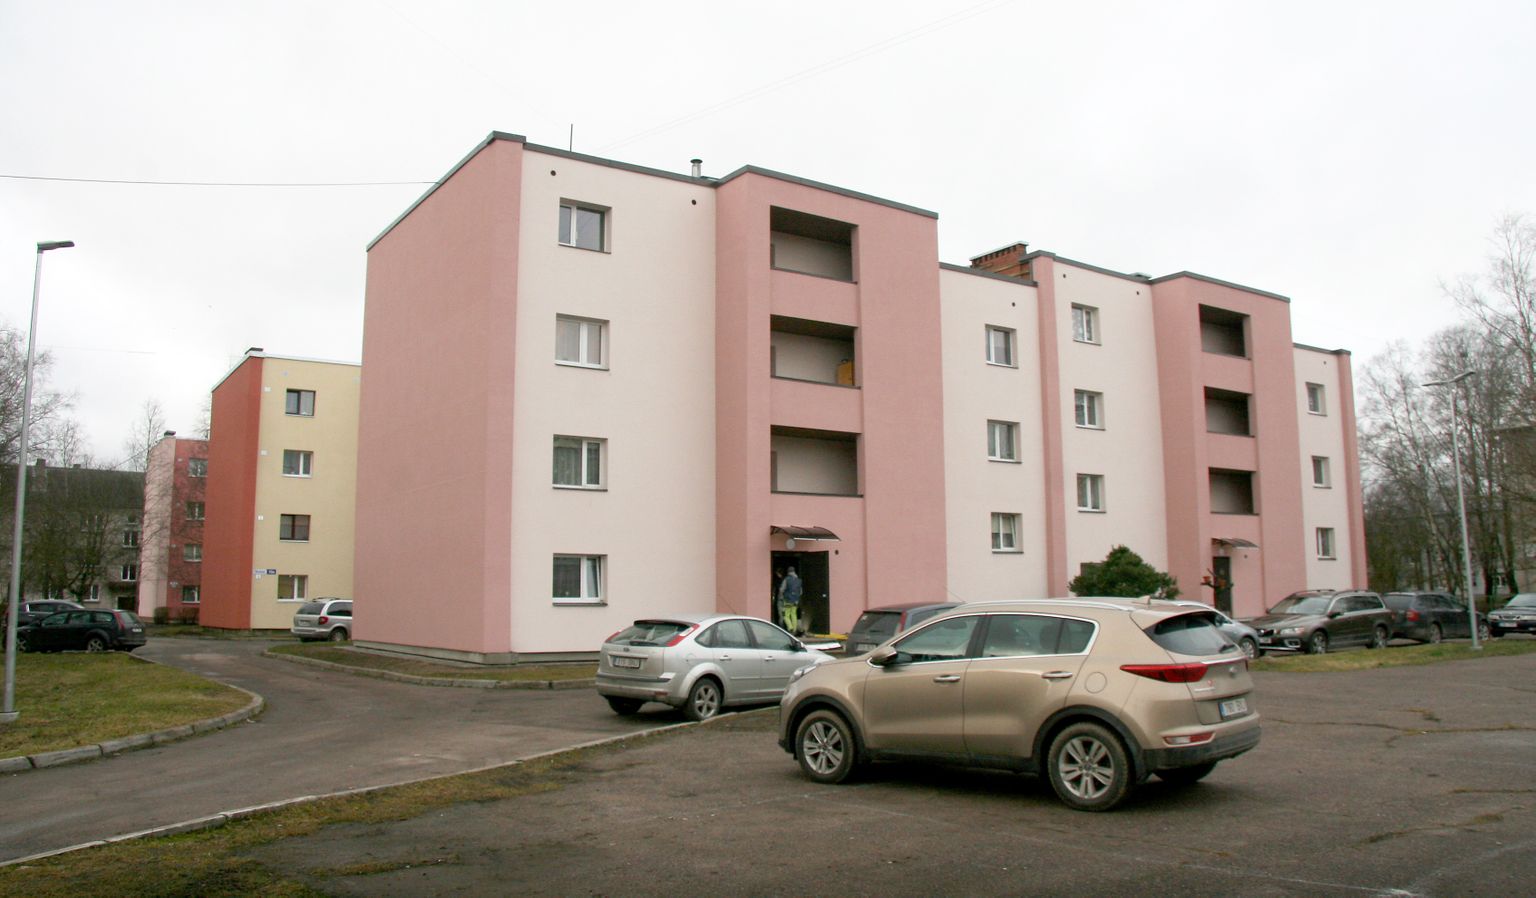 В Кохтла-Ярве за много лет ни одного нового квартирного дома построено не было, правда, некоторые дома, как на улице Тервизе в Ахтмеской части города, реновированы.